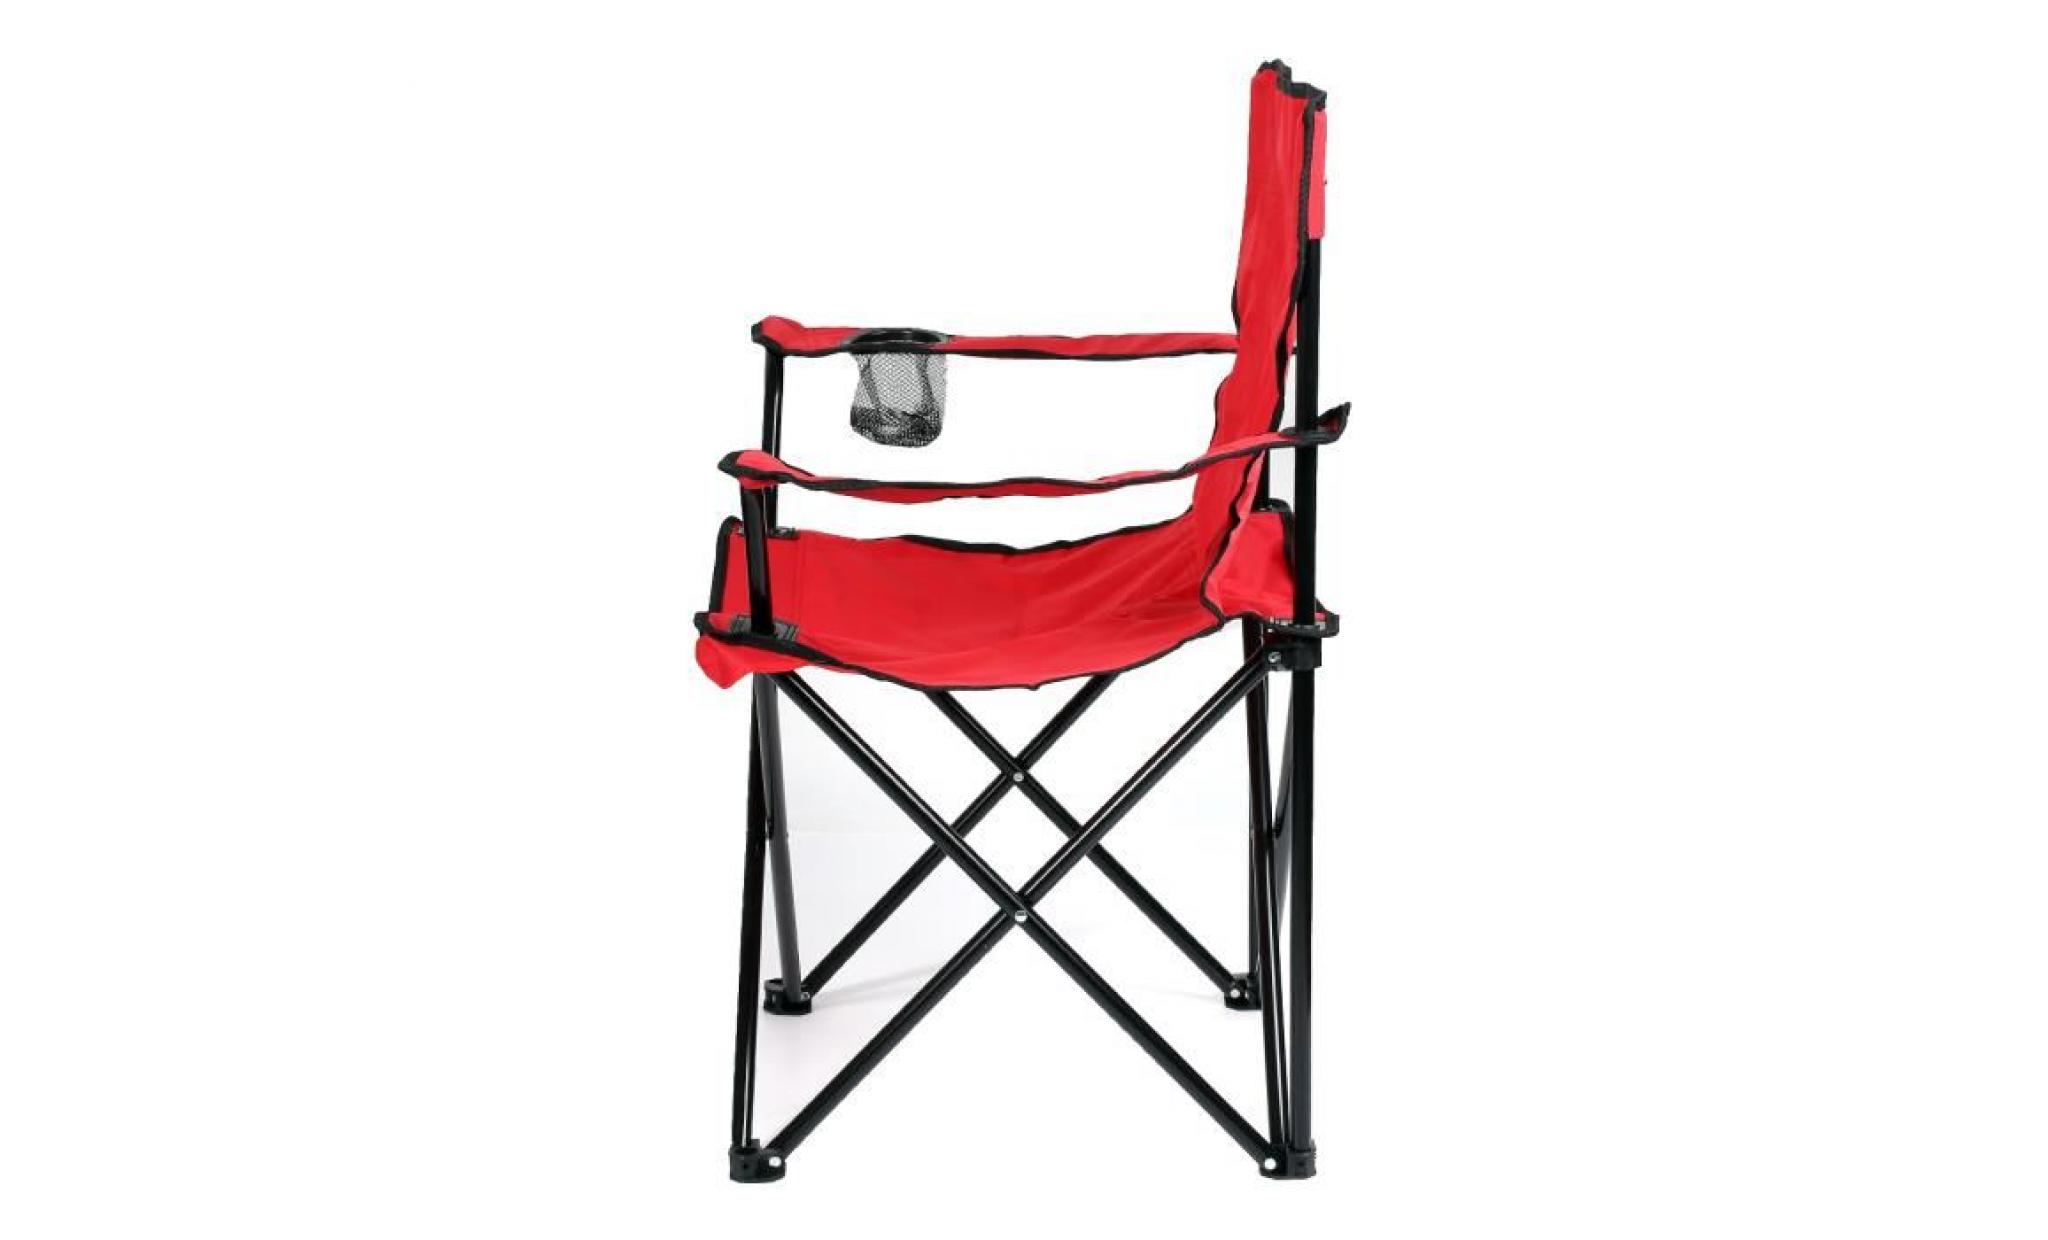 lot de 2 (rouge) chaise pliante camping et jardin pour pêche activités de plein air pas cher